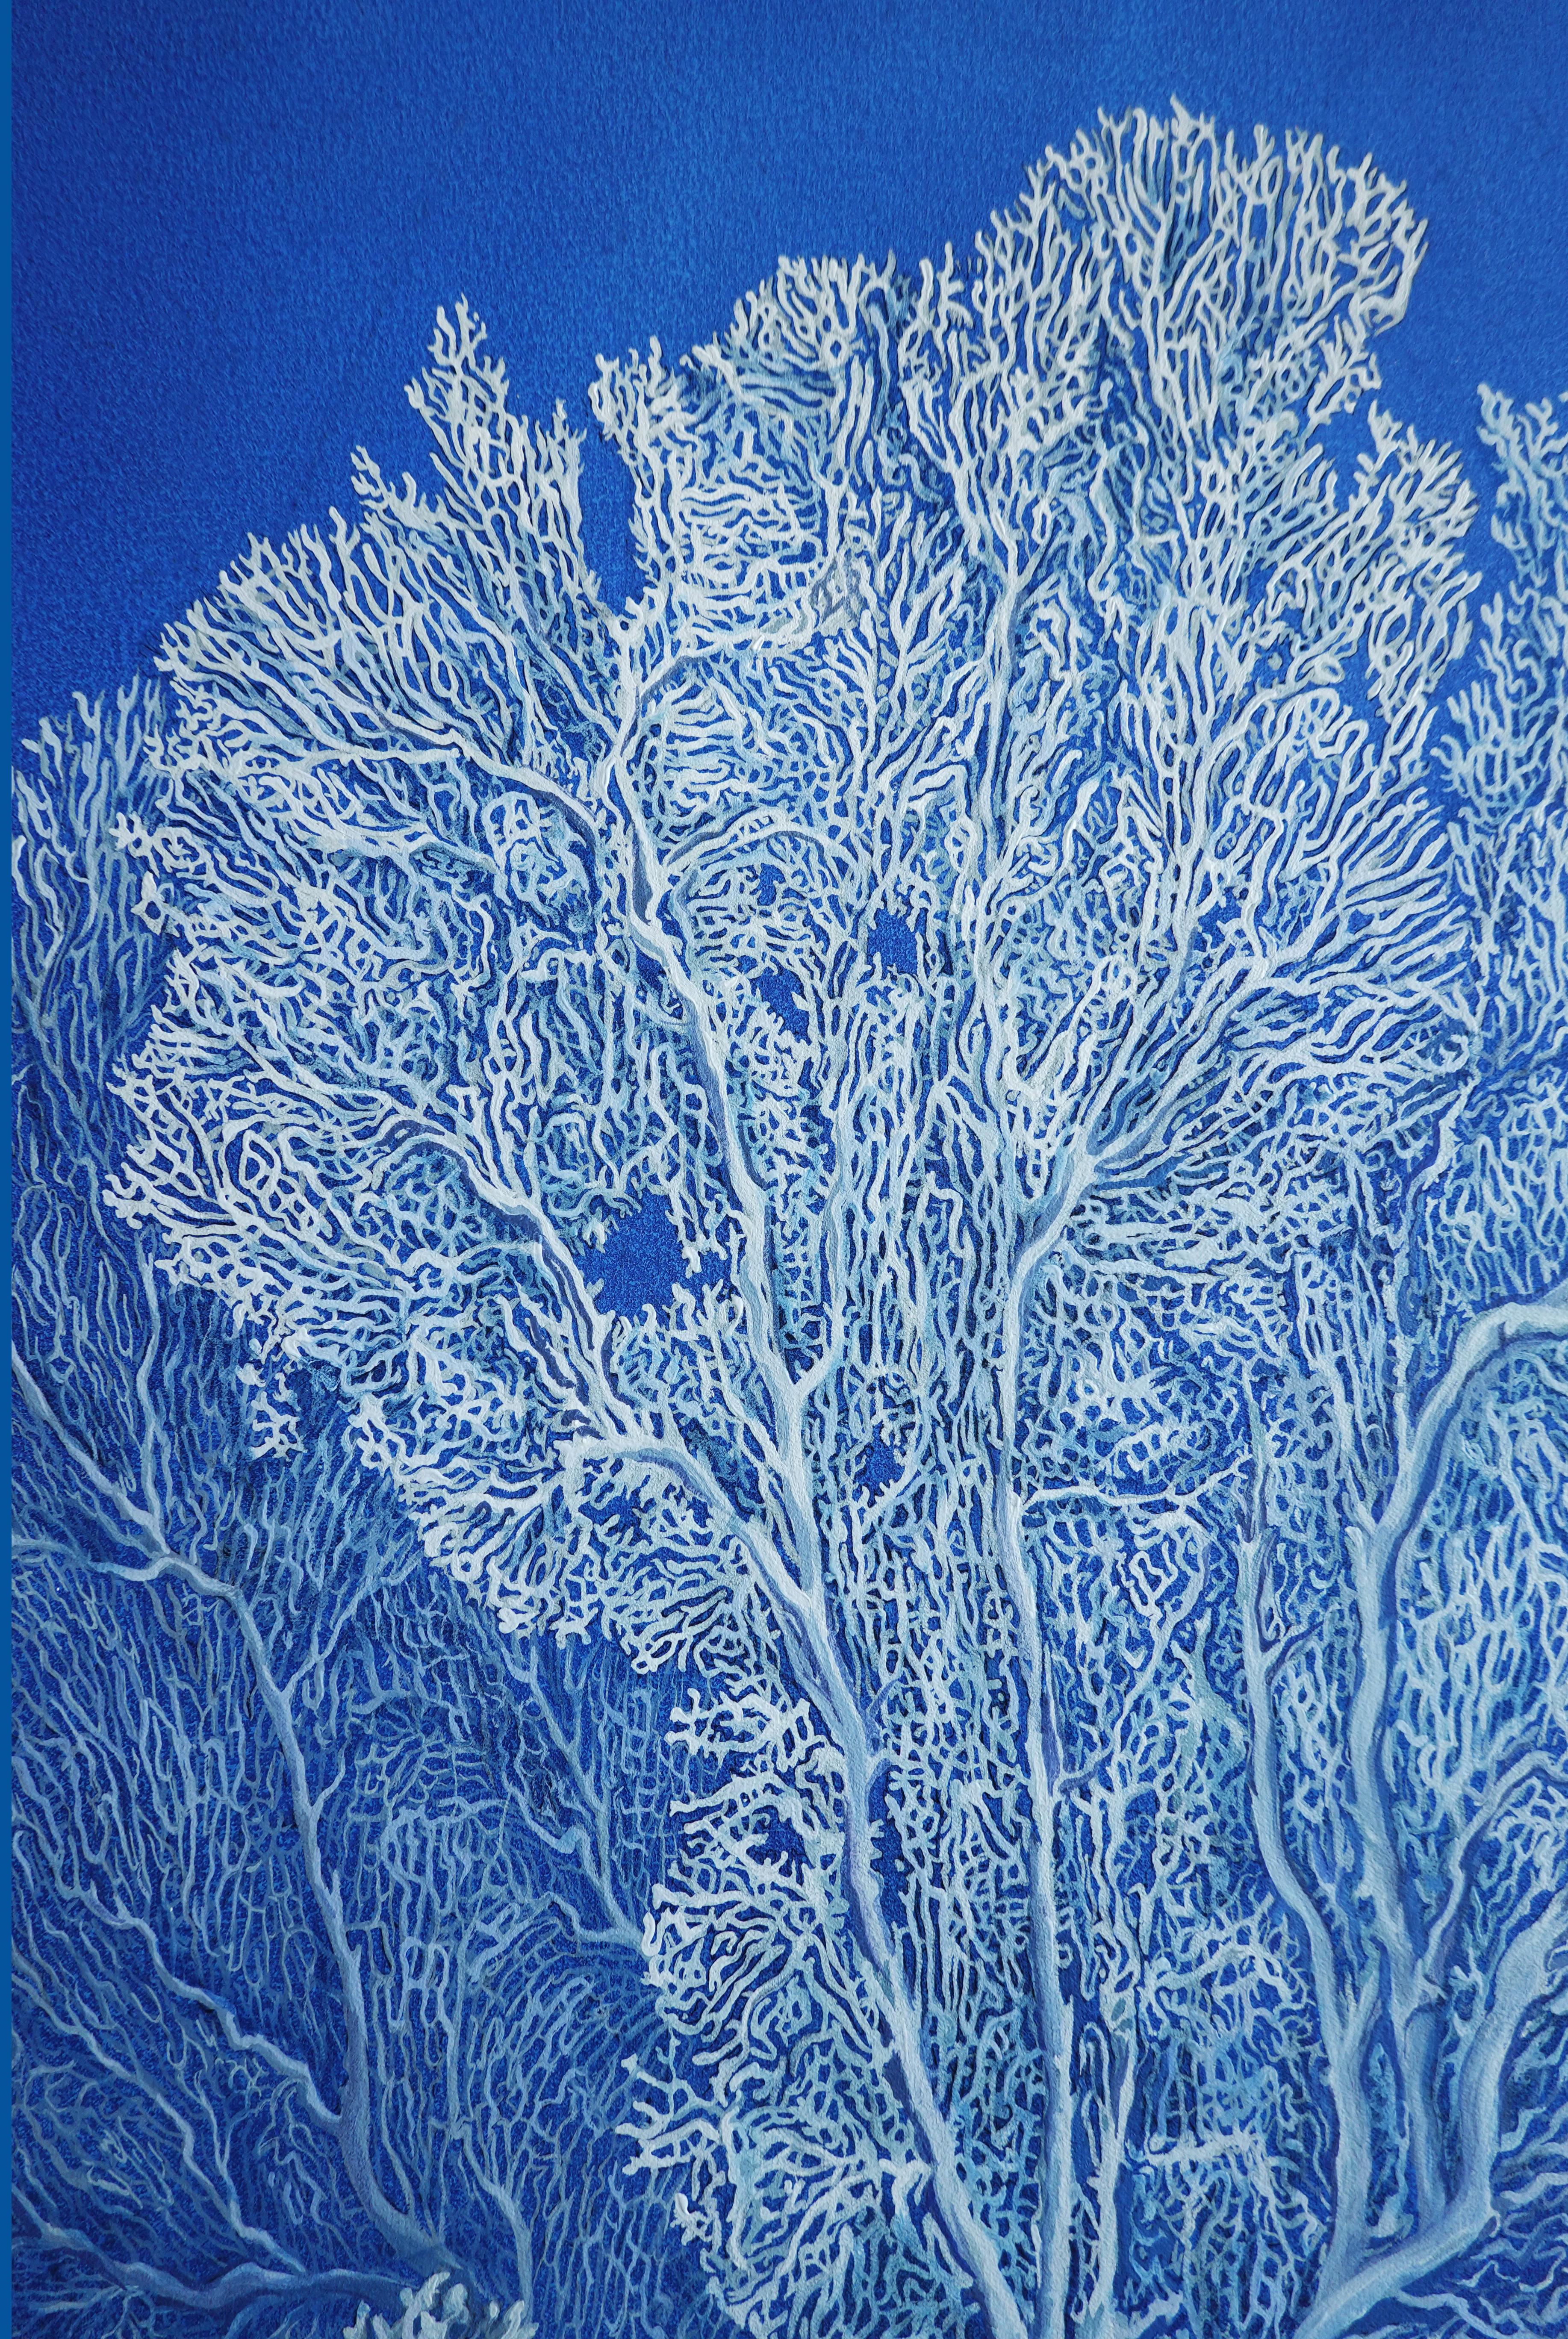 Korallengarten (Ozean) - Öl auf Leinwand, hergestellt in weißen, blauen Farben (Realismus), Painting, von Nikolina Kovalenko